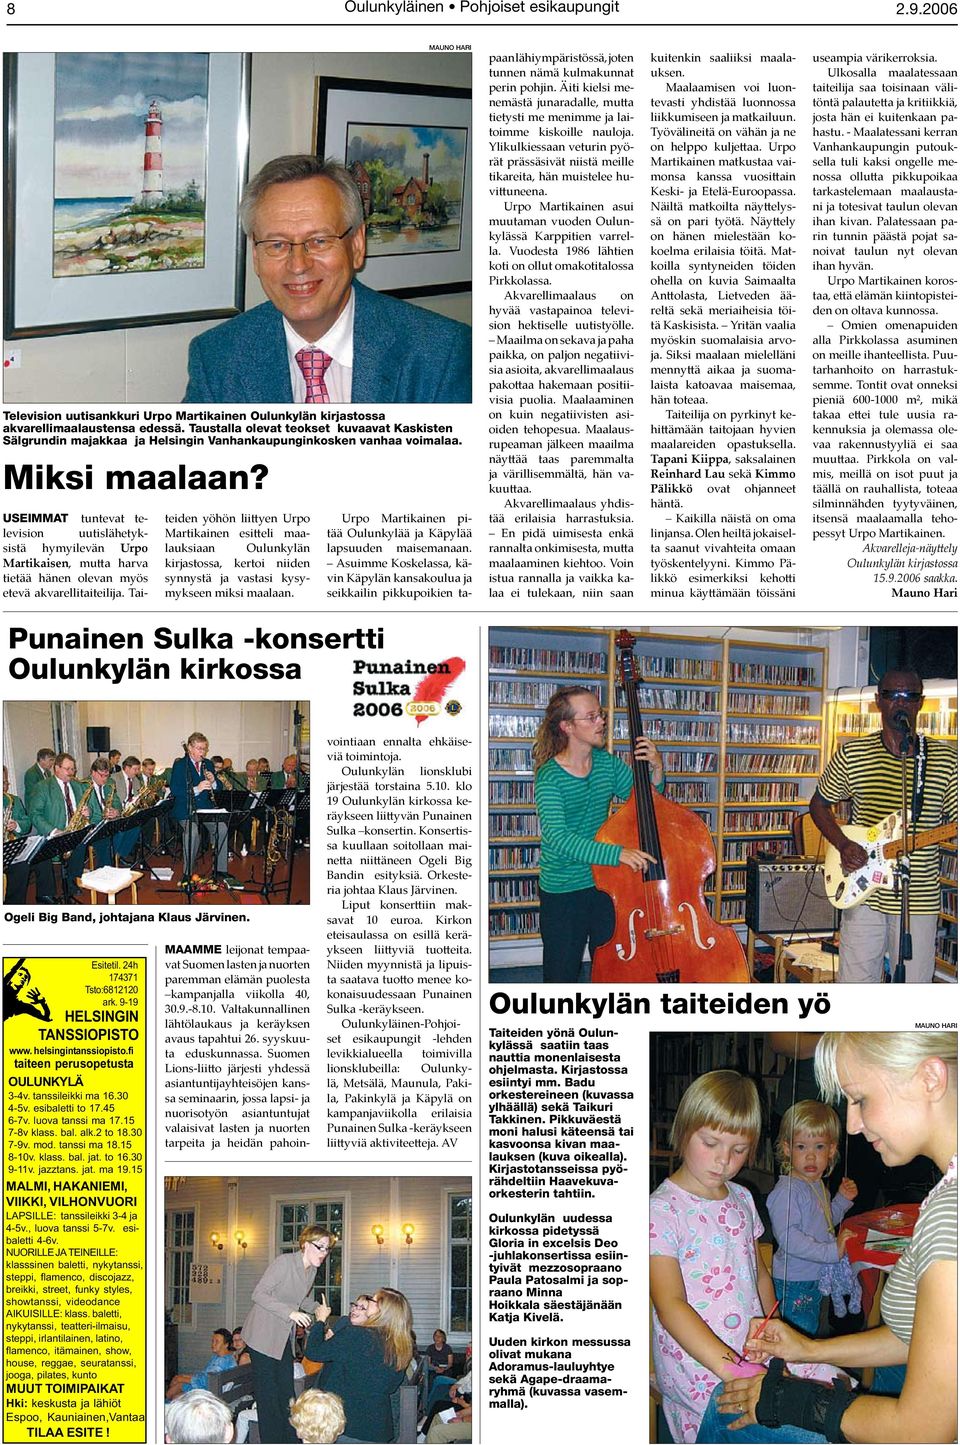 MAUNO HARI Television uutisankkuri Urpo Martikainen Oulunkylän kirjastossa akvarellimaalaustensa edessä.